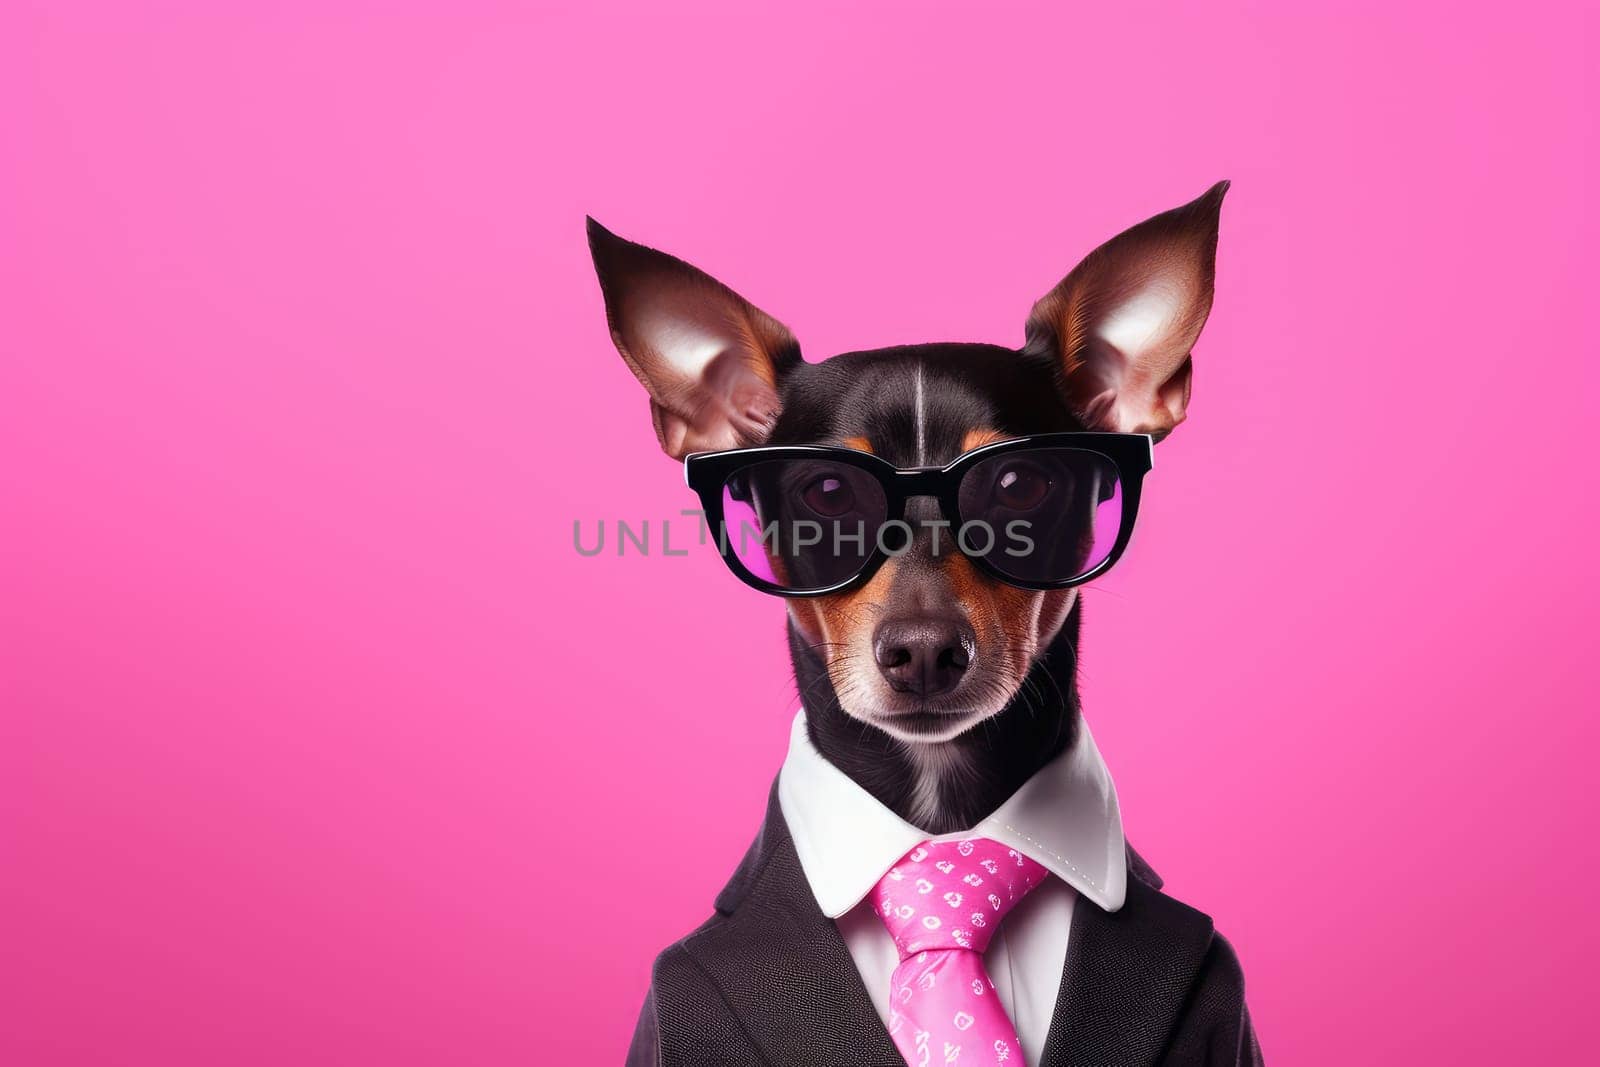 Stylish portrait of dressed up anthropomorphic Animal wearing glasses, AI Generative.